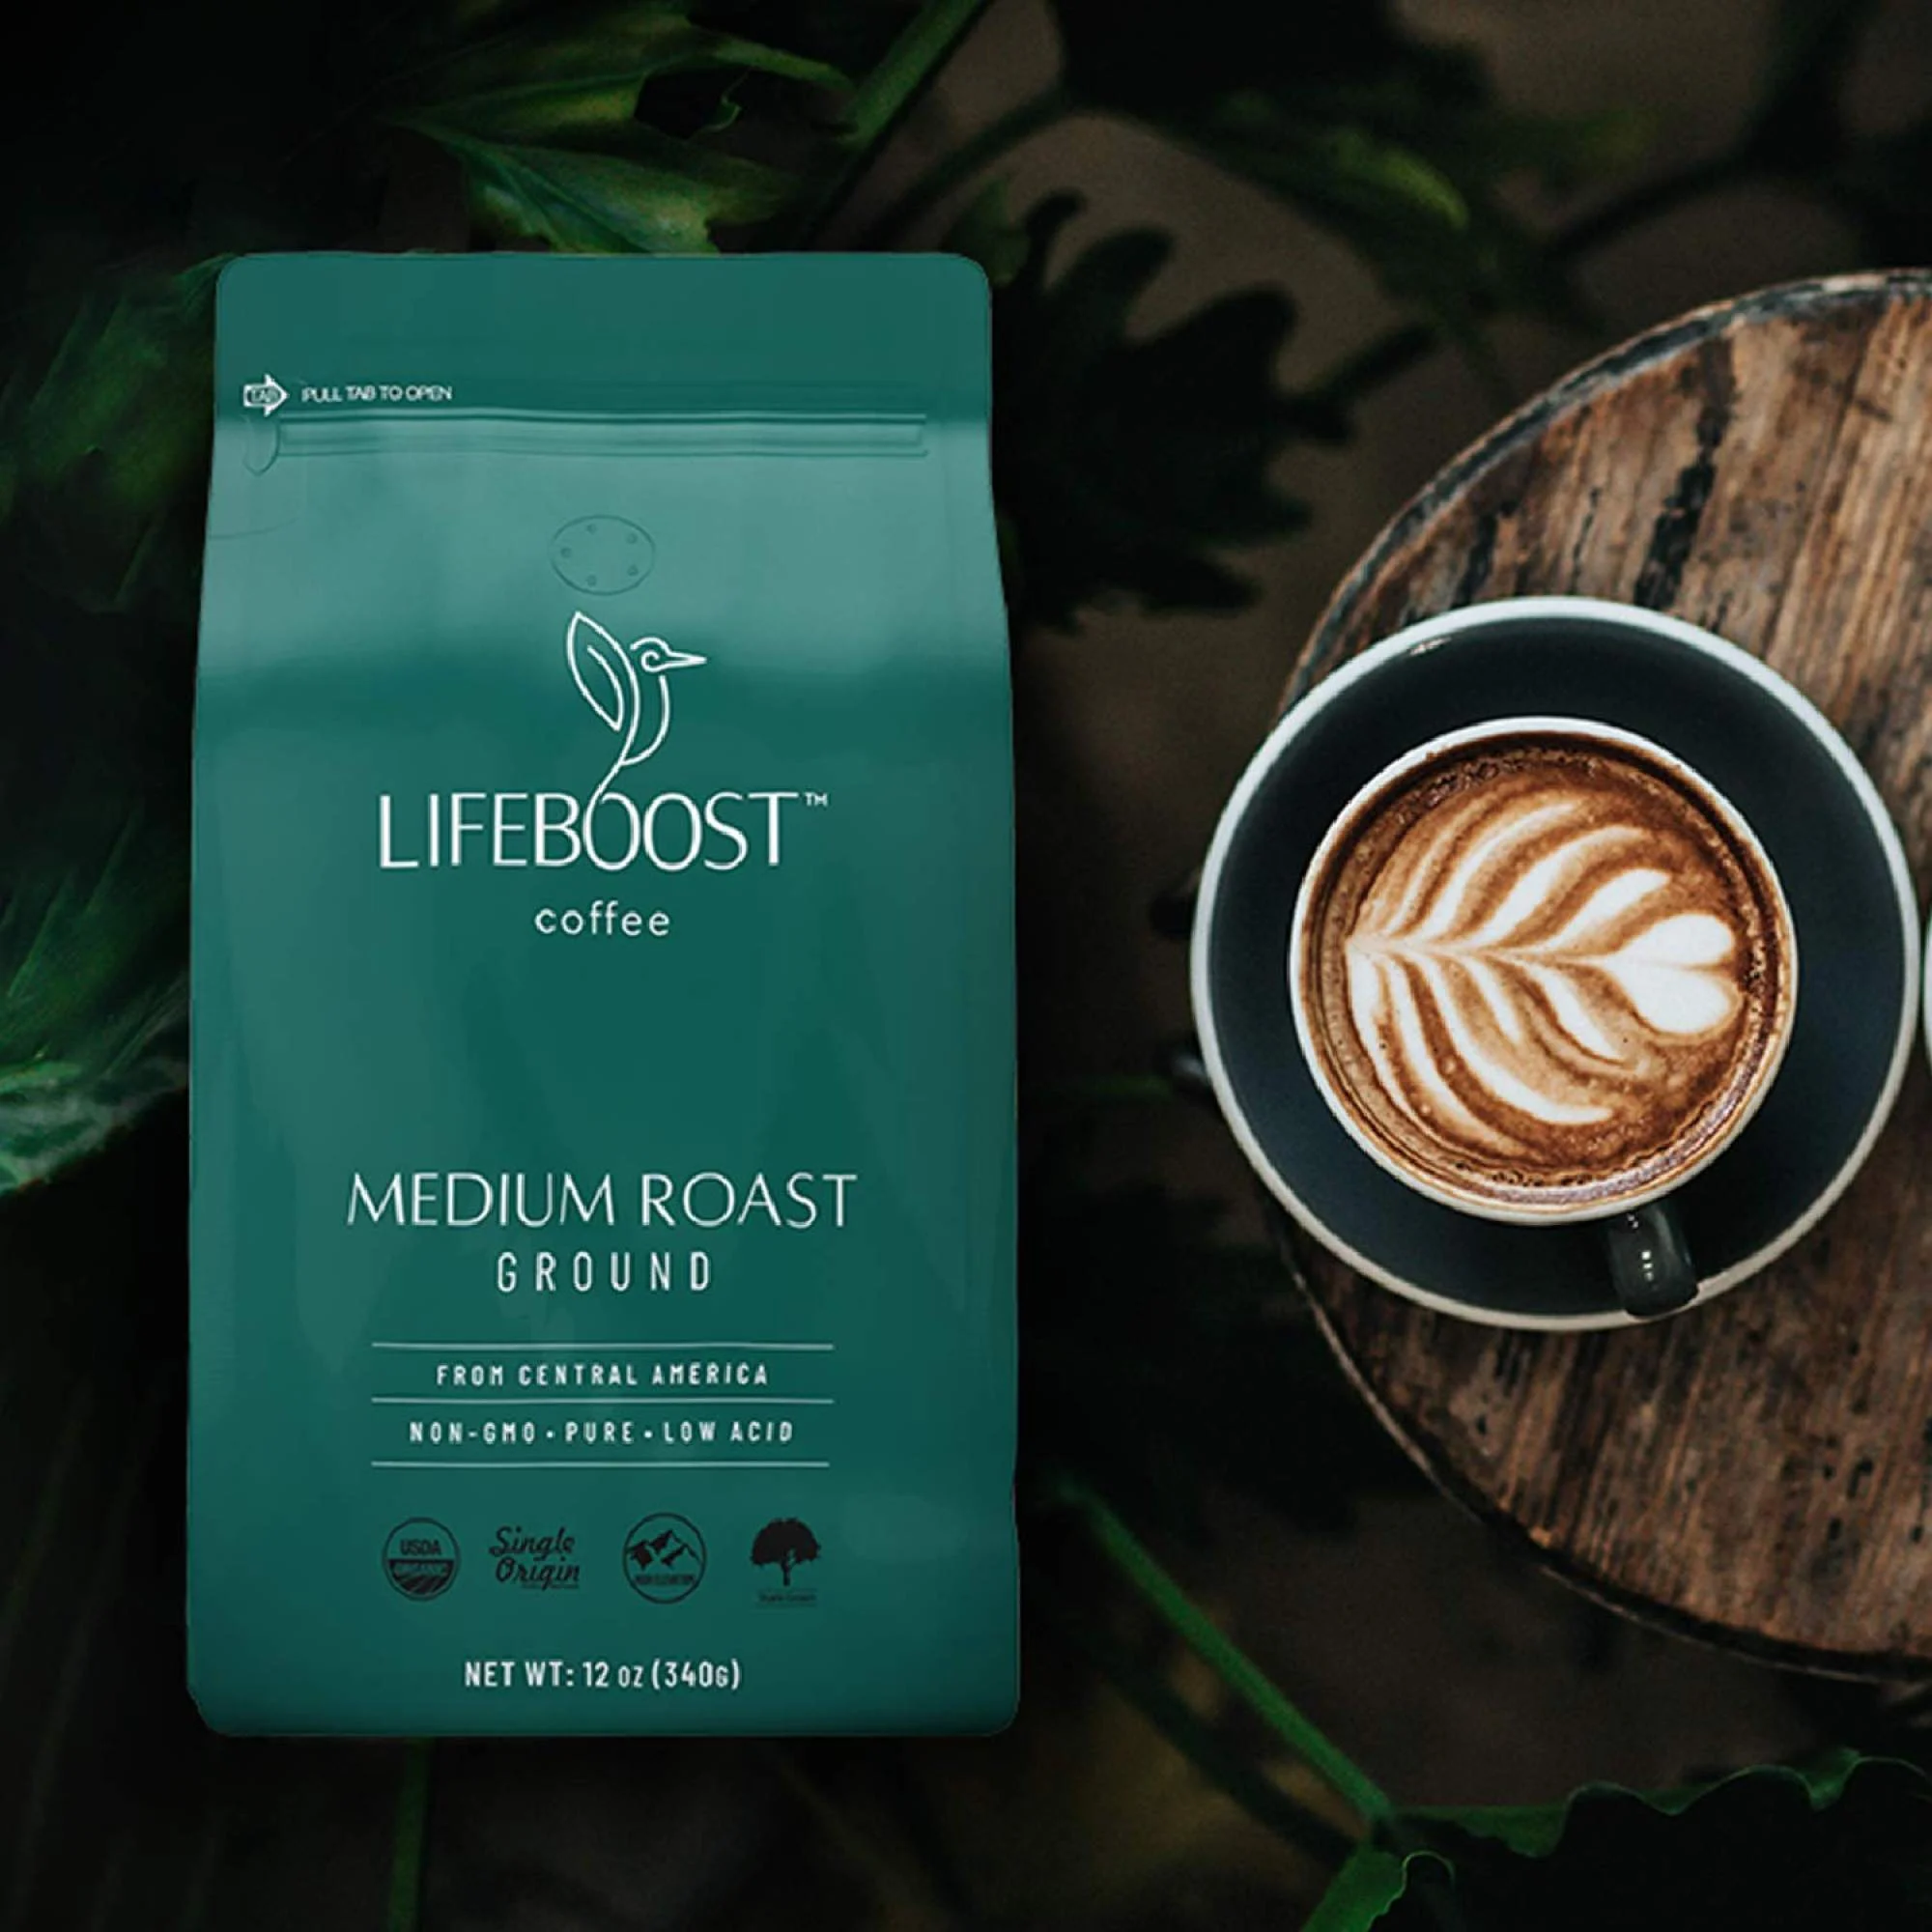 Cà phê xay Lifeboost có hàm lượng axit thấp